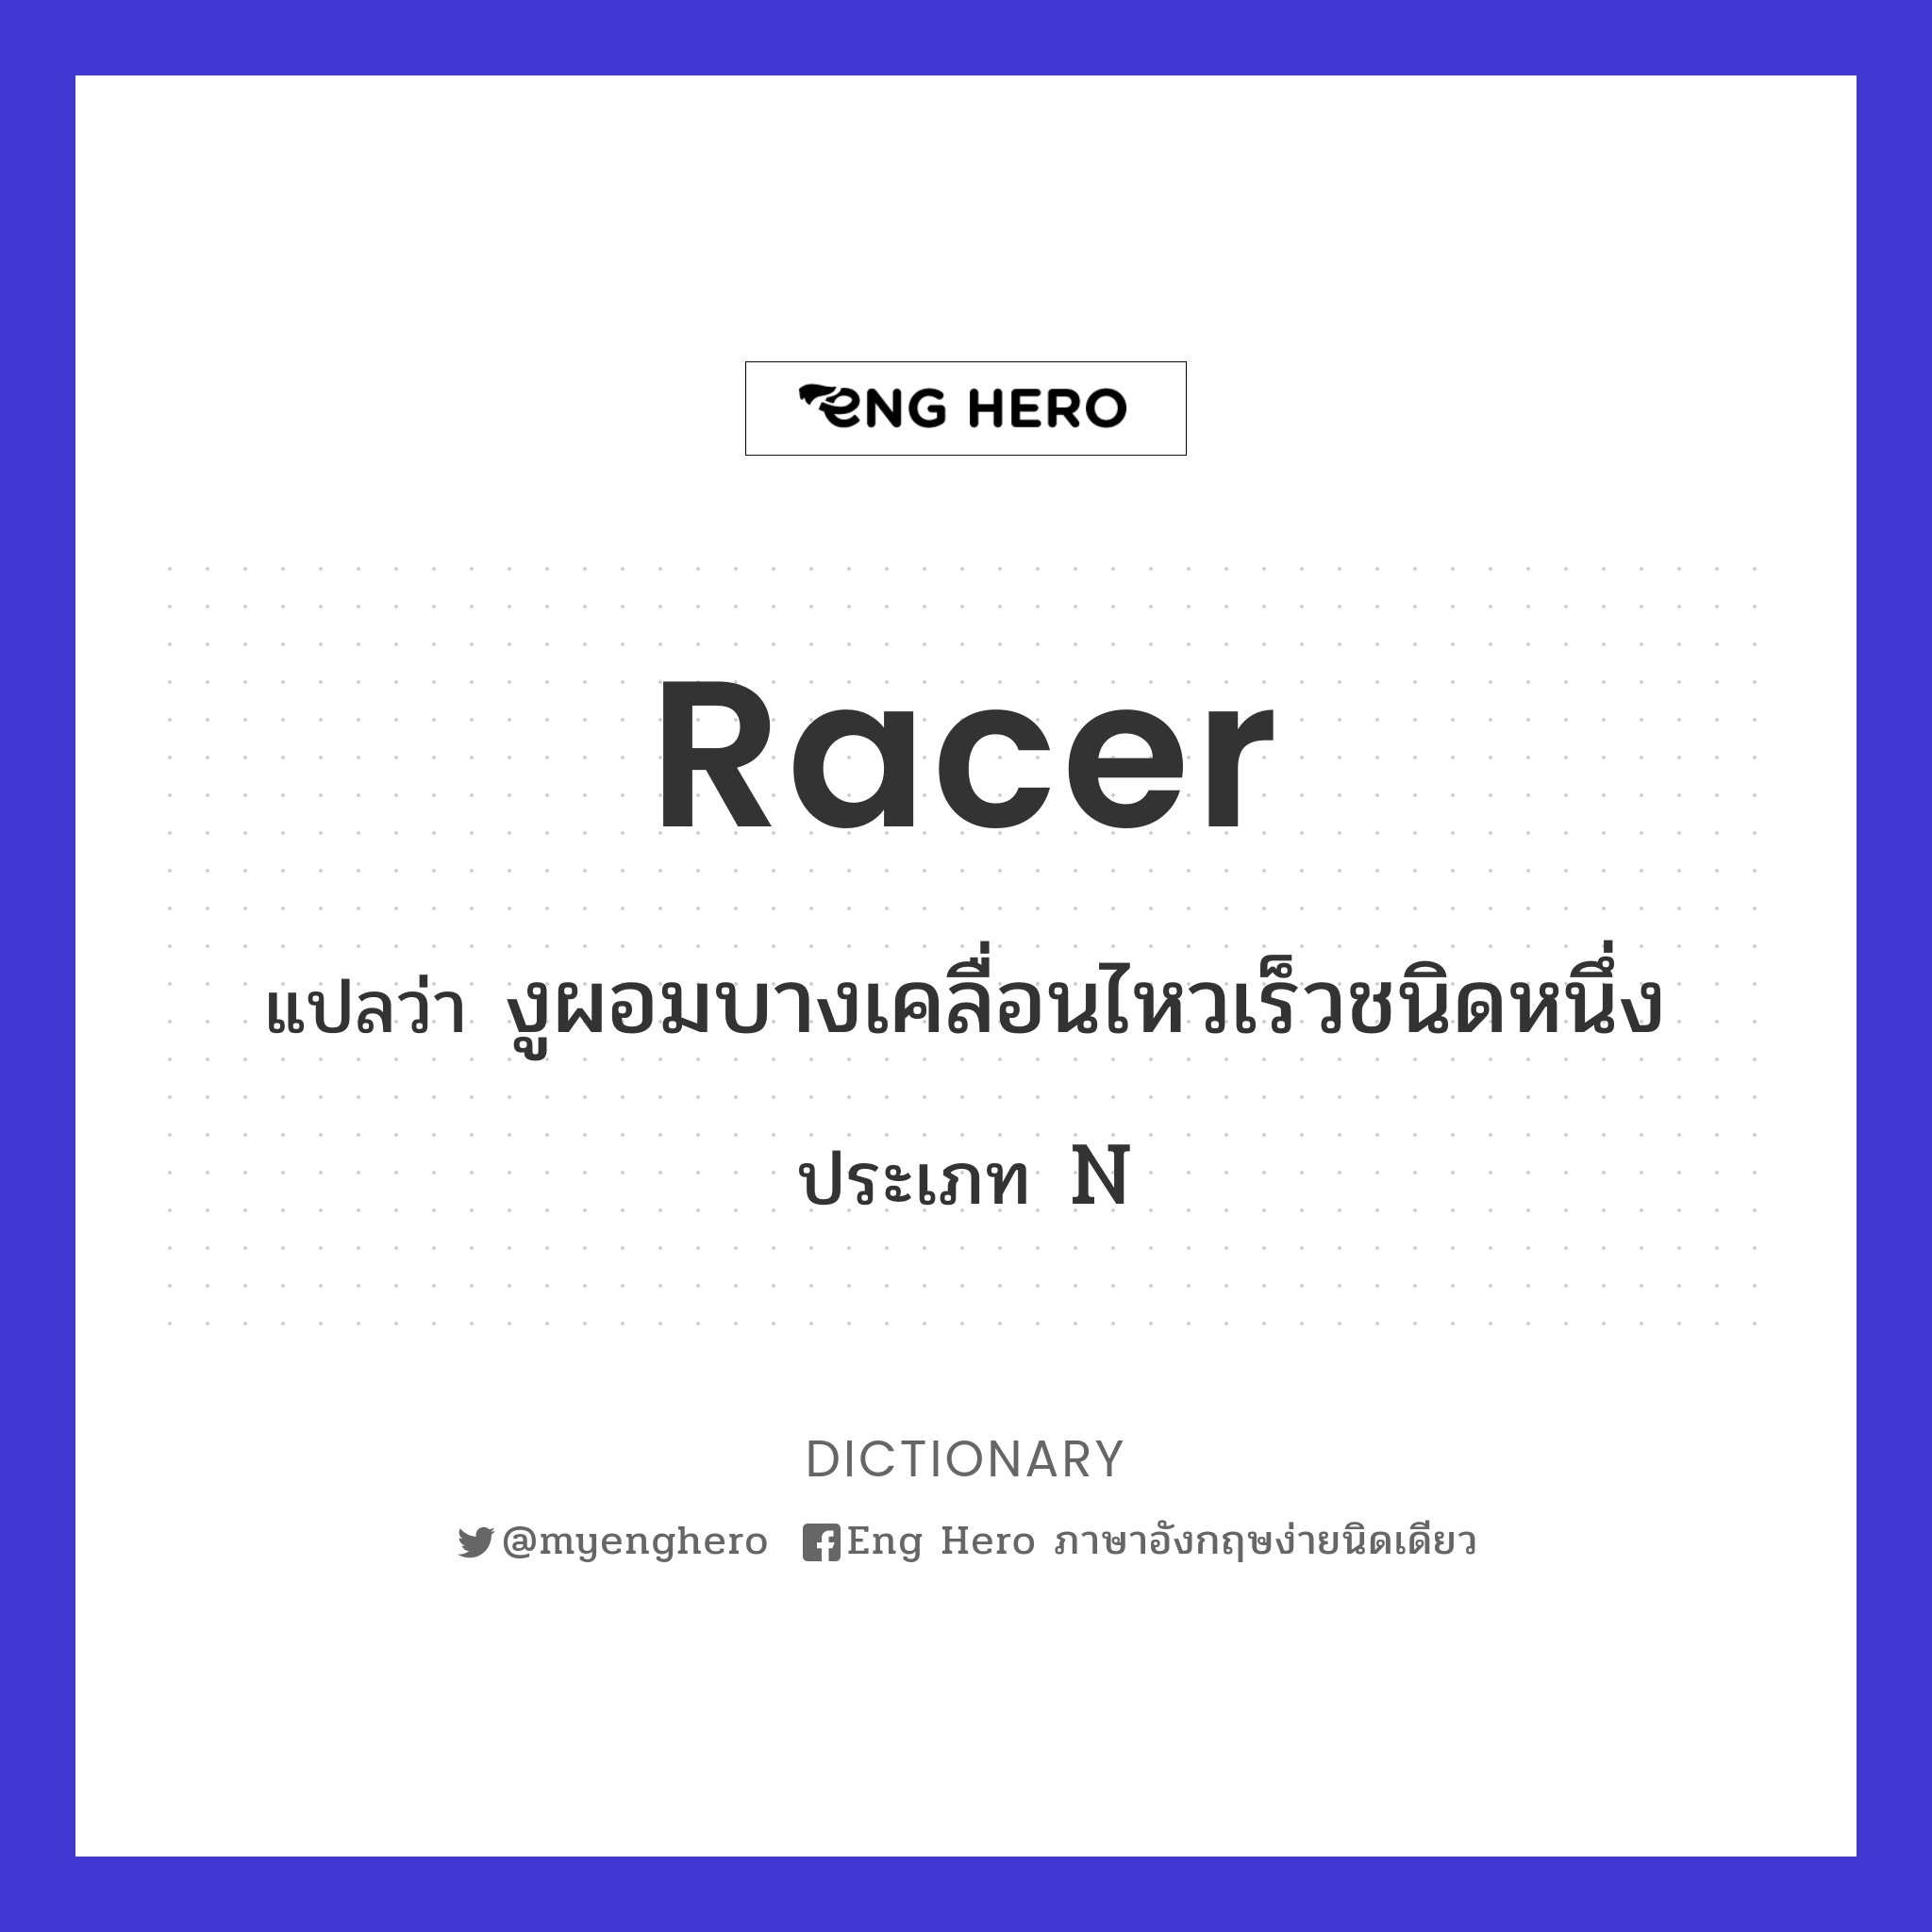 racer